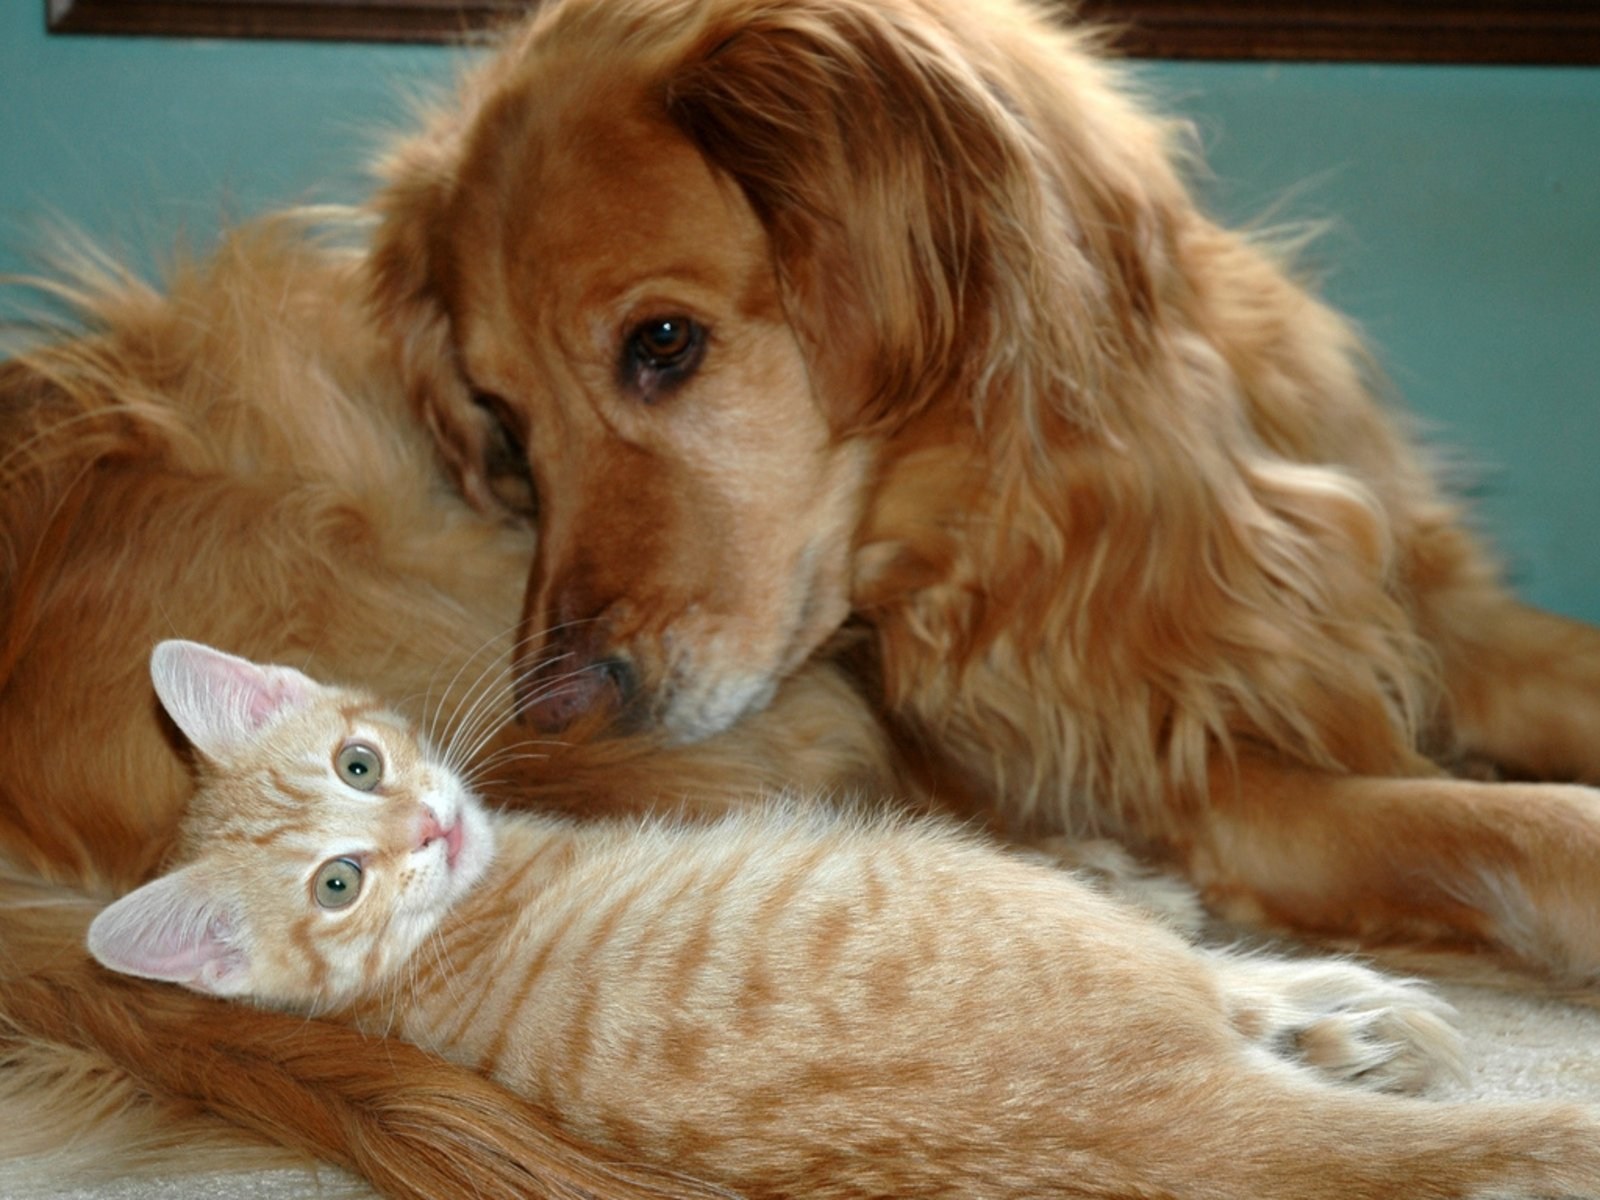 Моем кошек и собак. Кошки и собаки. Картинки кошек и собак. Rjireb b CJ,FRB. Собака и кошка вместе.